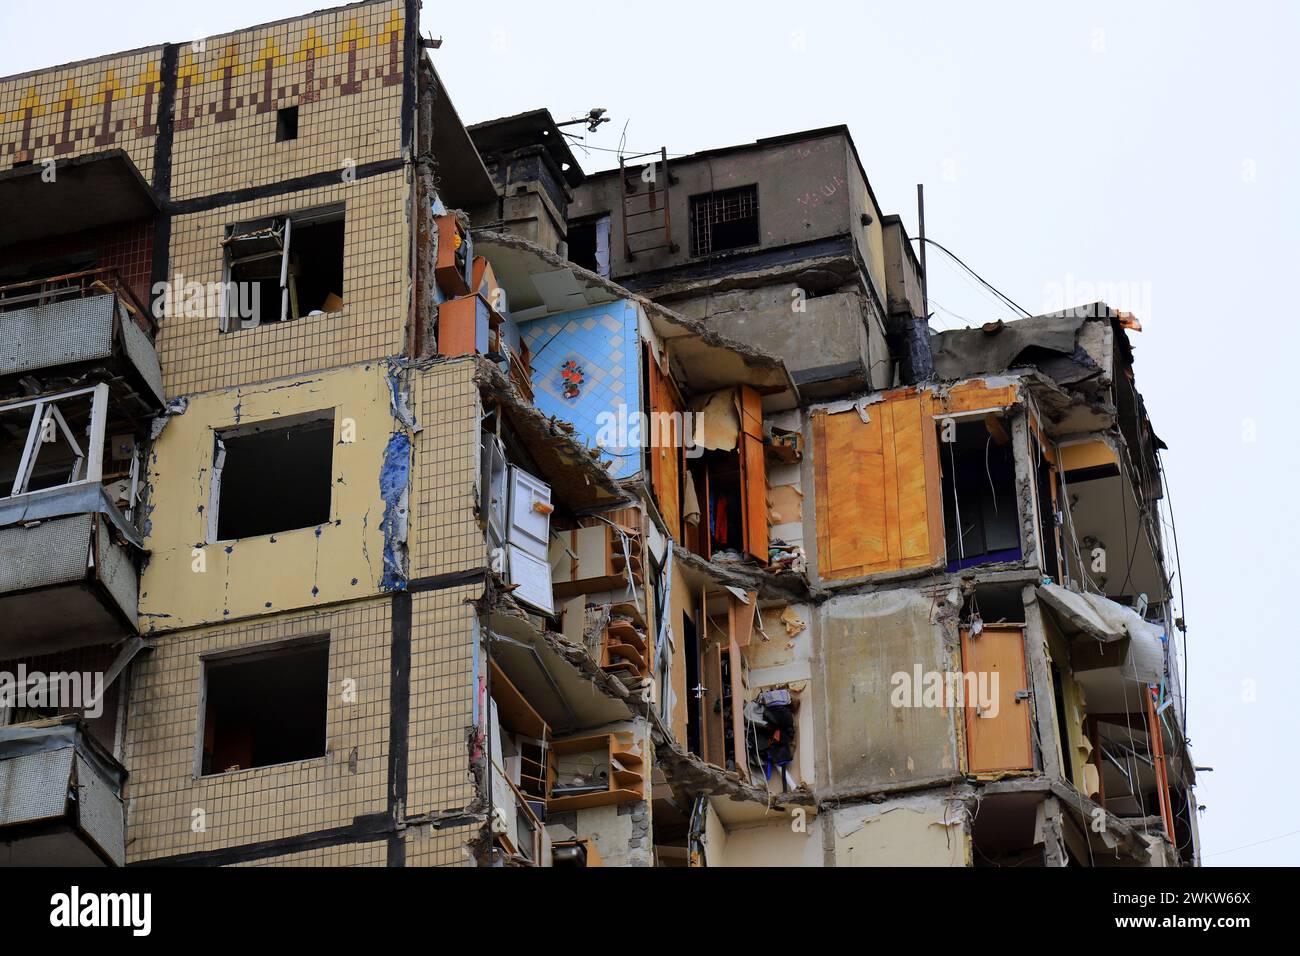 Frappe de missiles russes sur un immeuble d'appartements à Dnipro, en Ukraine. La roquette a détruit la maison. Russie invasion de guerre en Ukraine, Dnepr, bâtiment détruit Banque D'Images